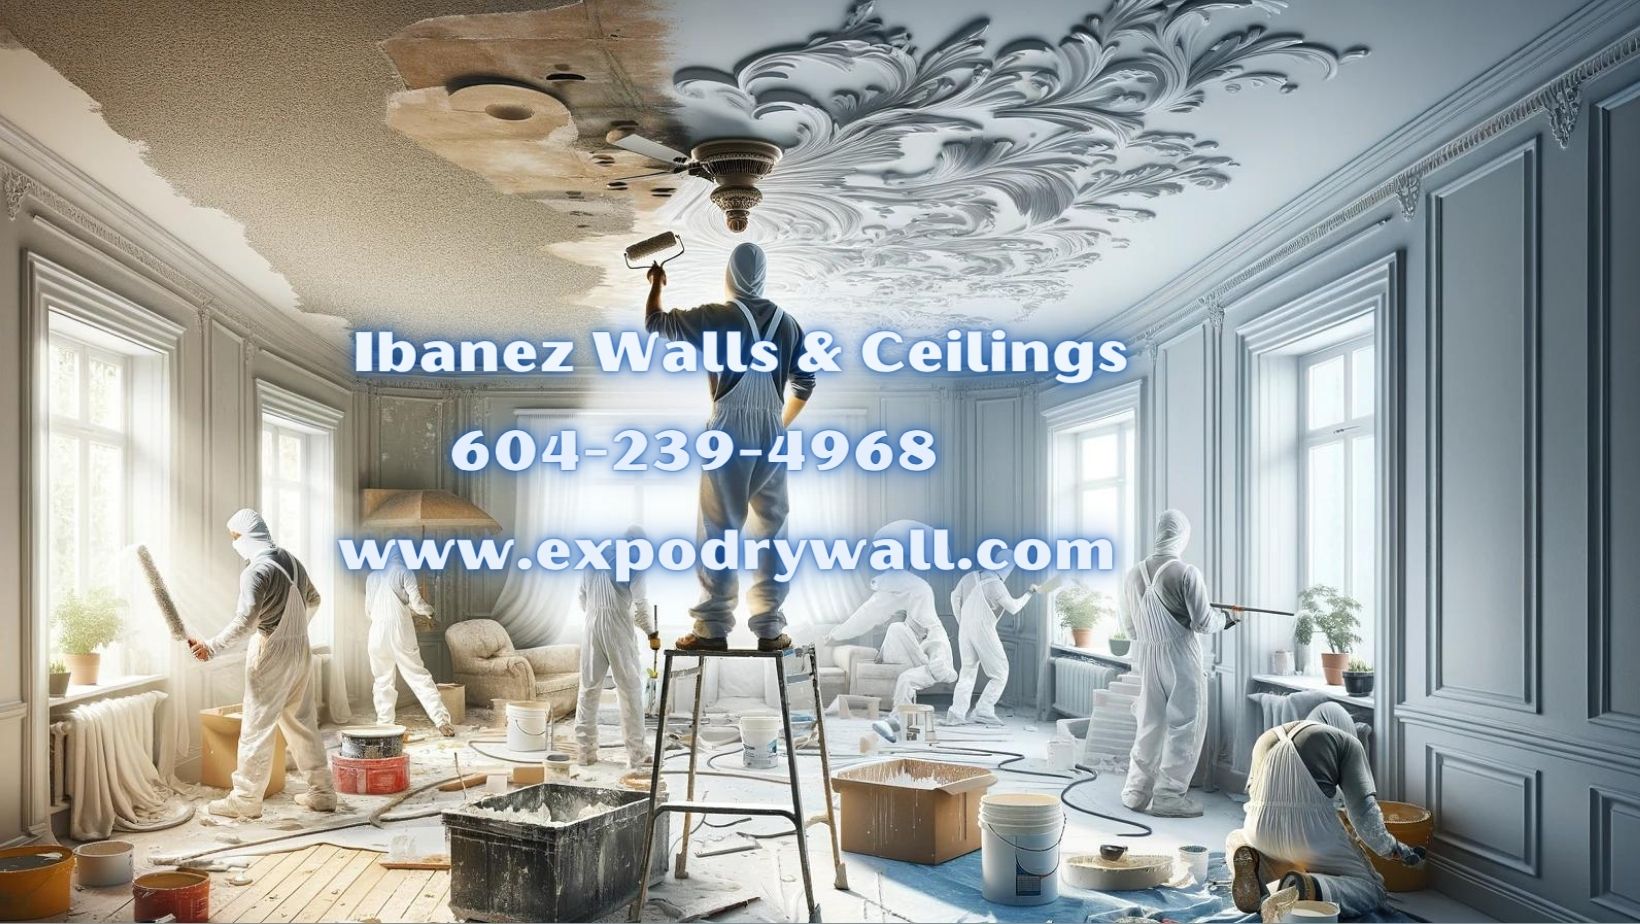 Ibanez walls & ceilings